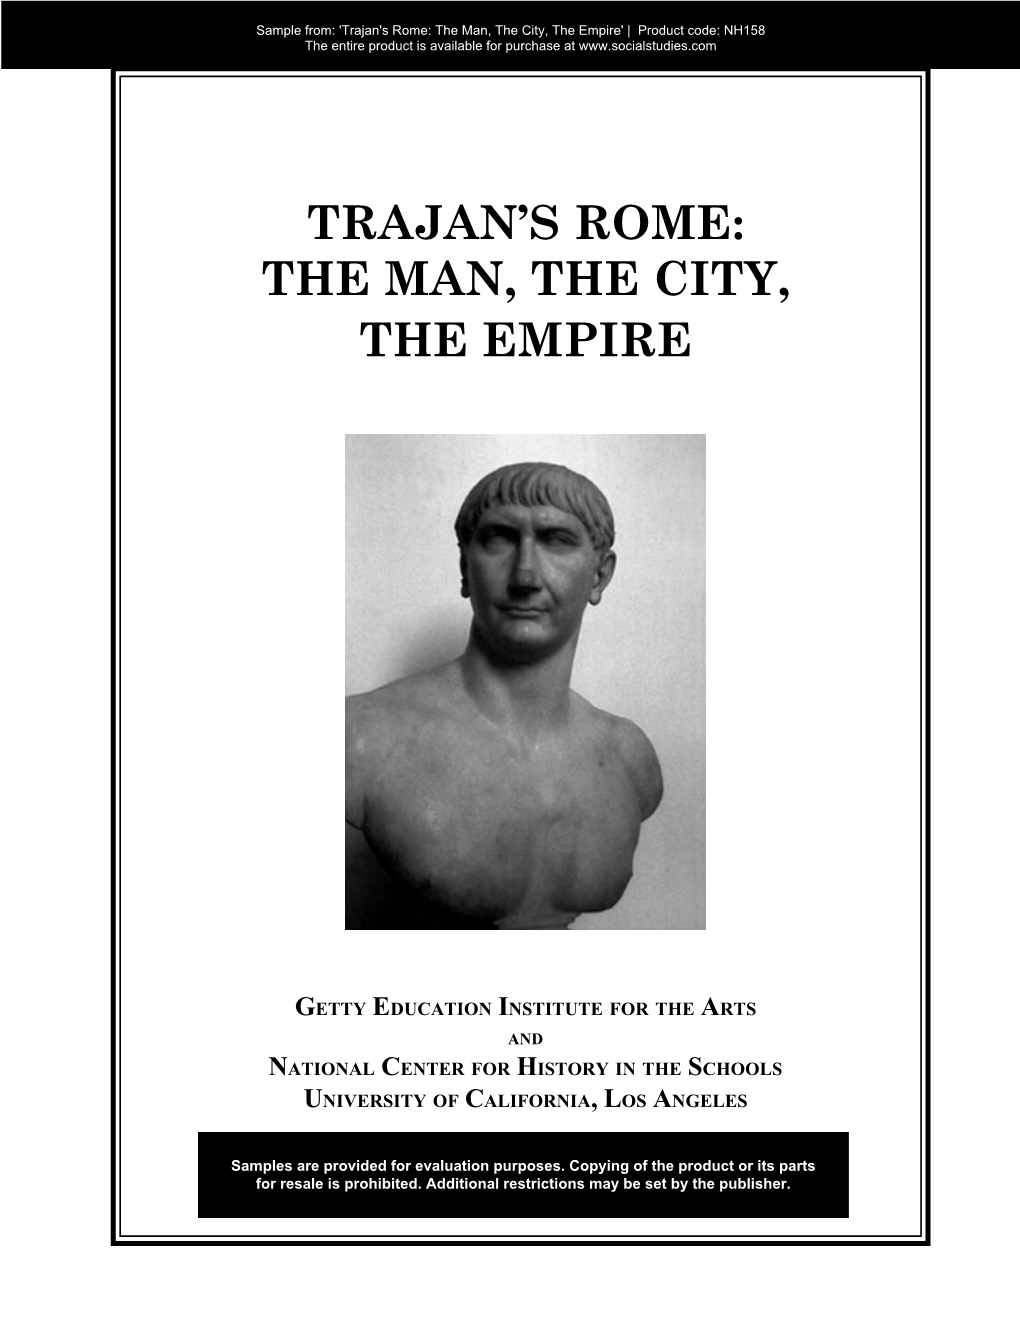 Trajan's Rome